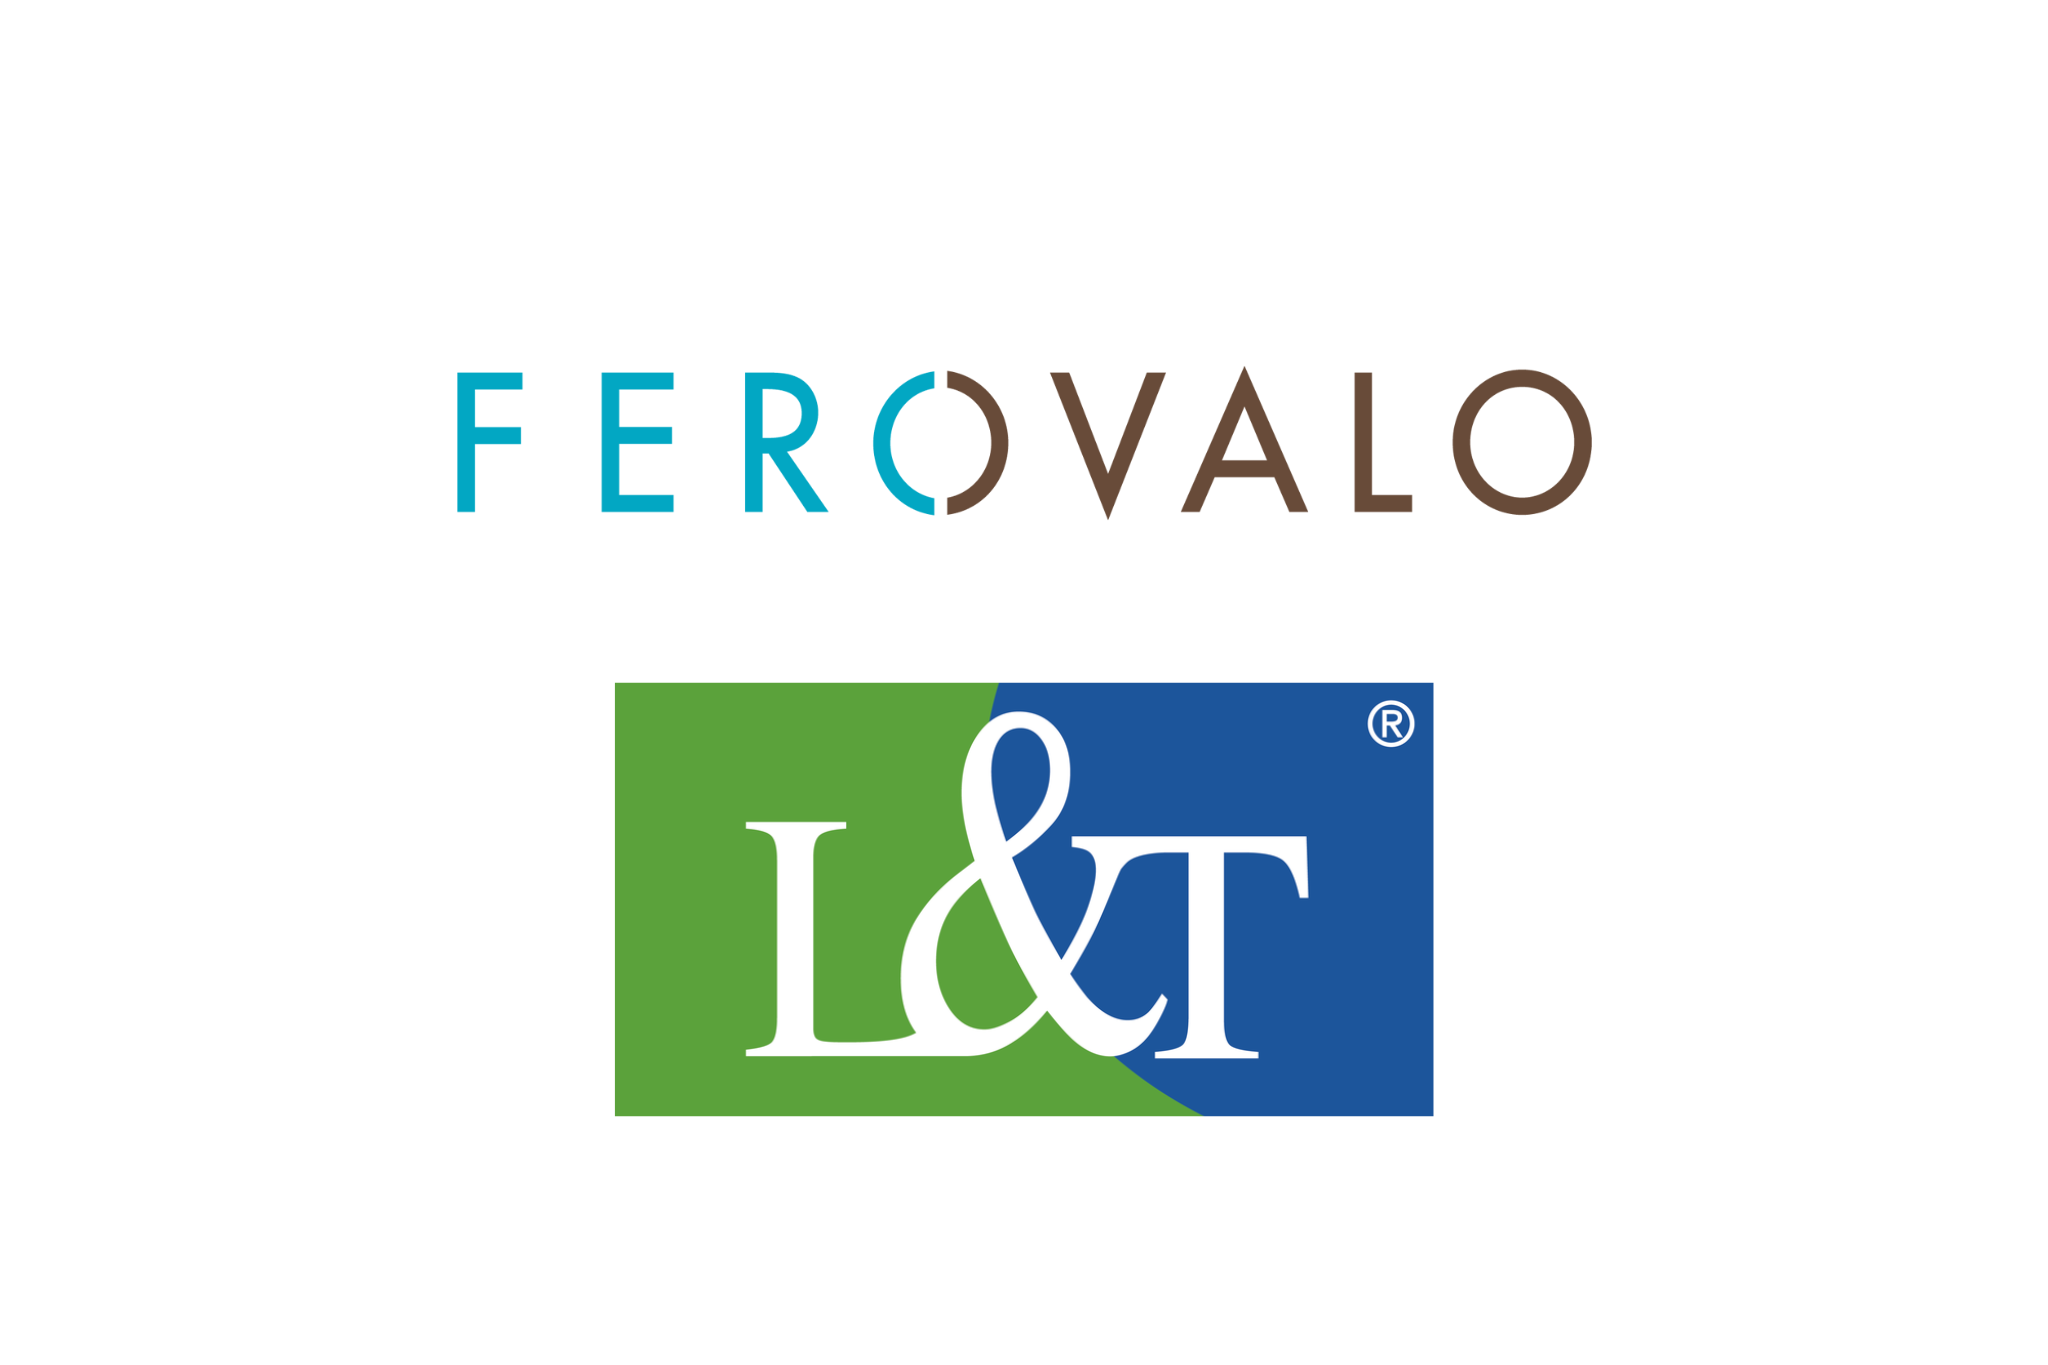 Ferovalo & L&T logo